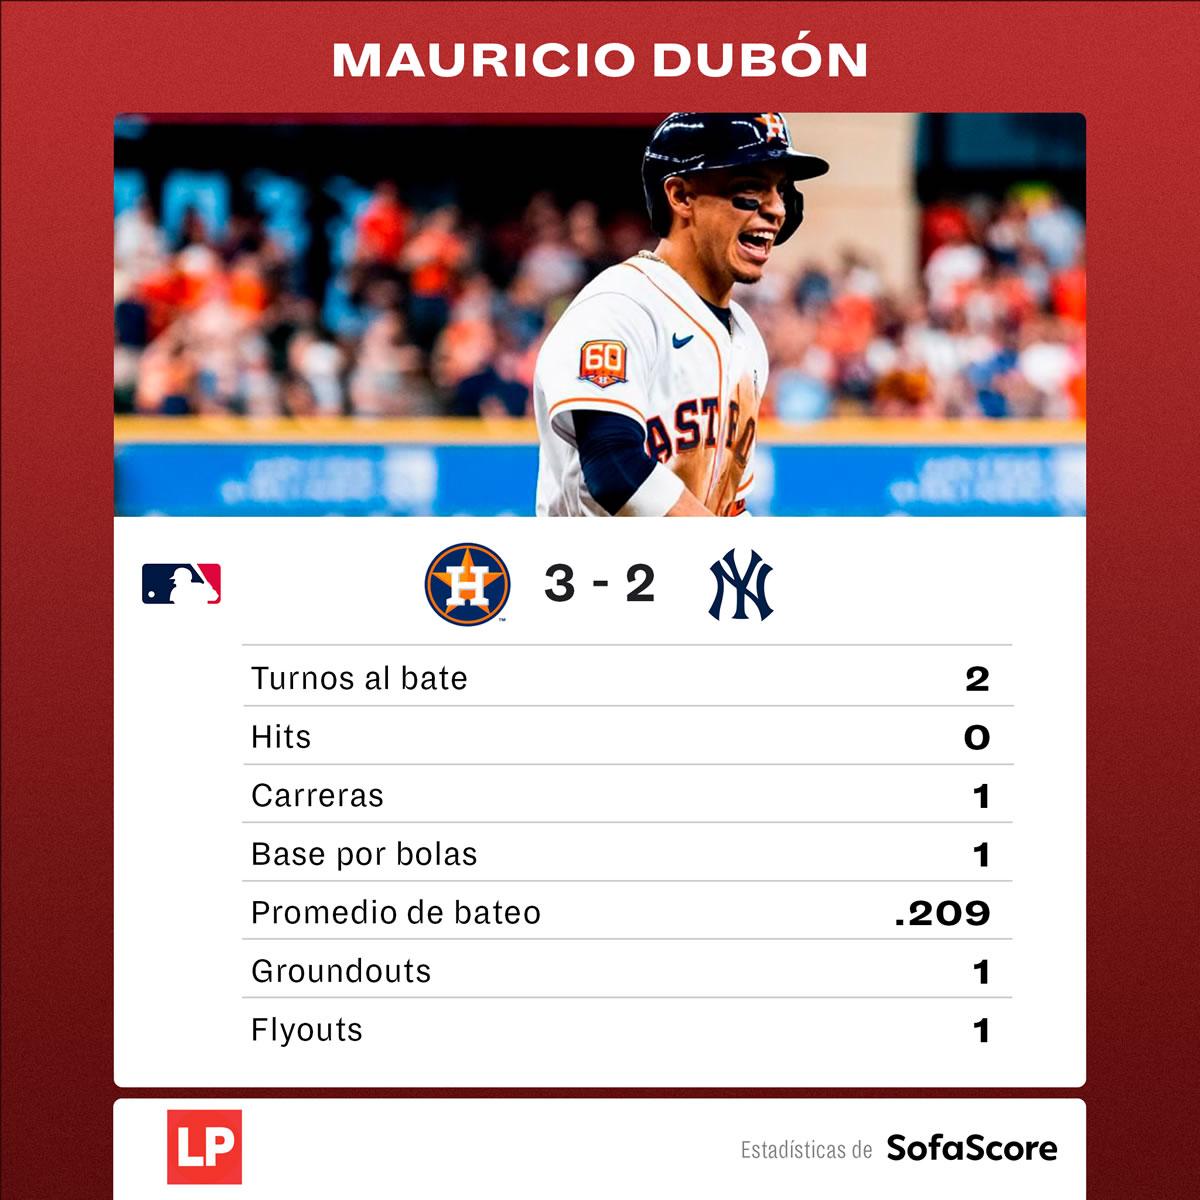 Los datos de Mauricio Dubón en el juego ante los Yankees.